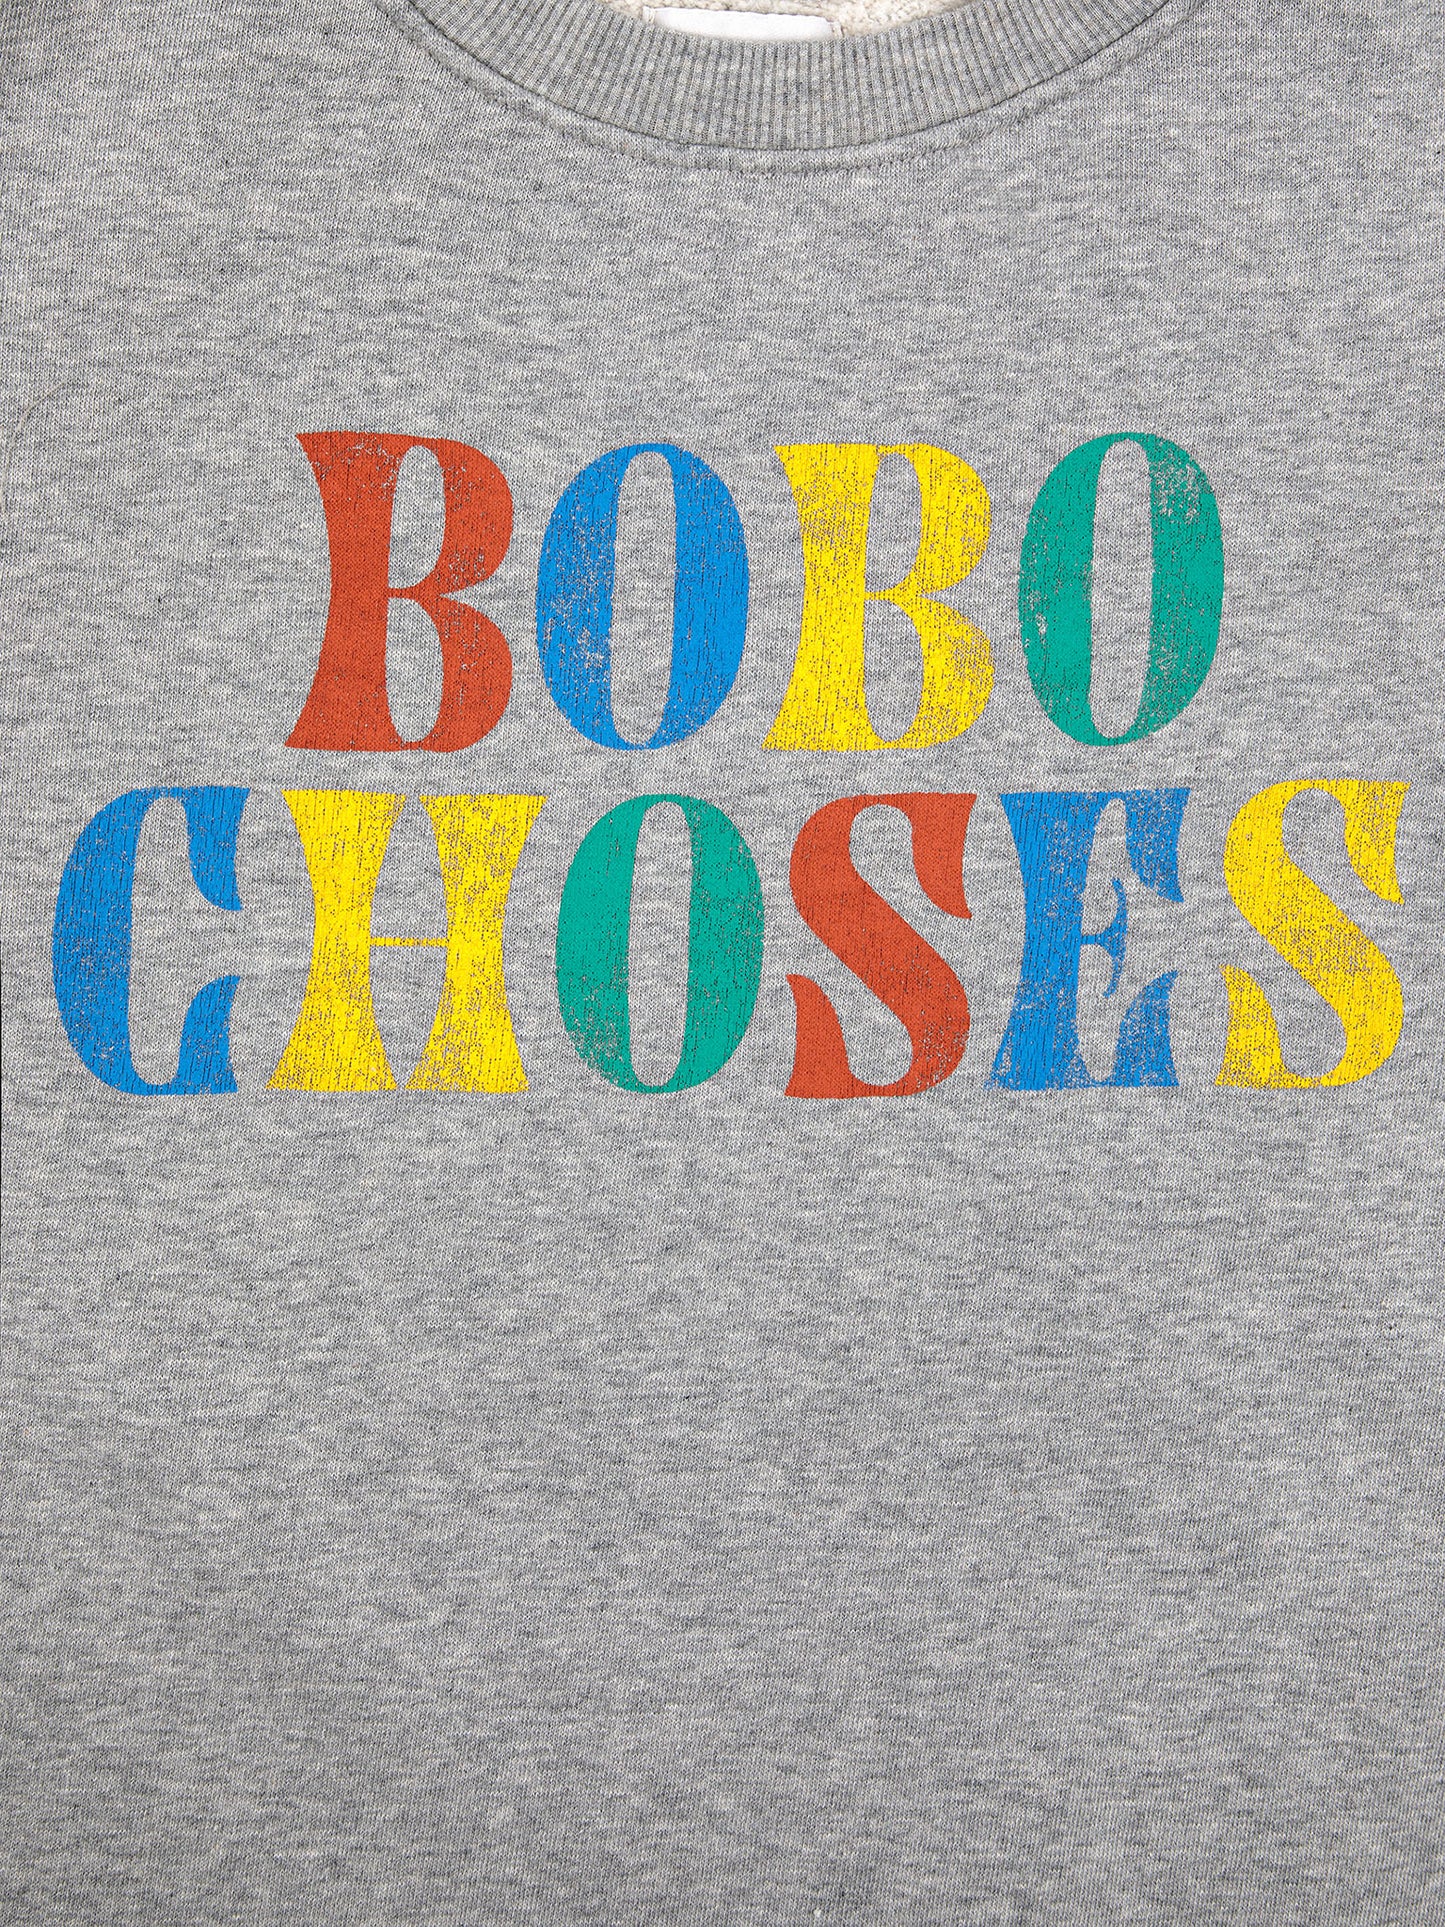 Vestido multicolor Bobo Choses